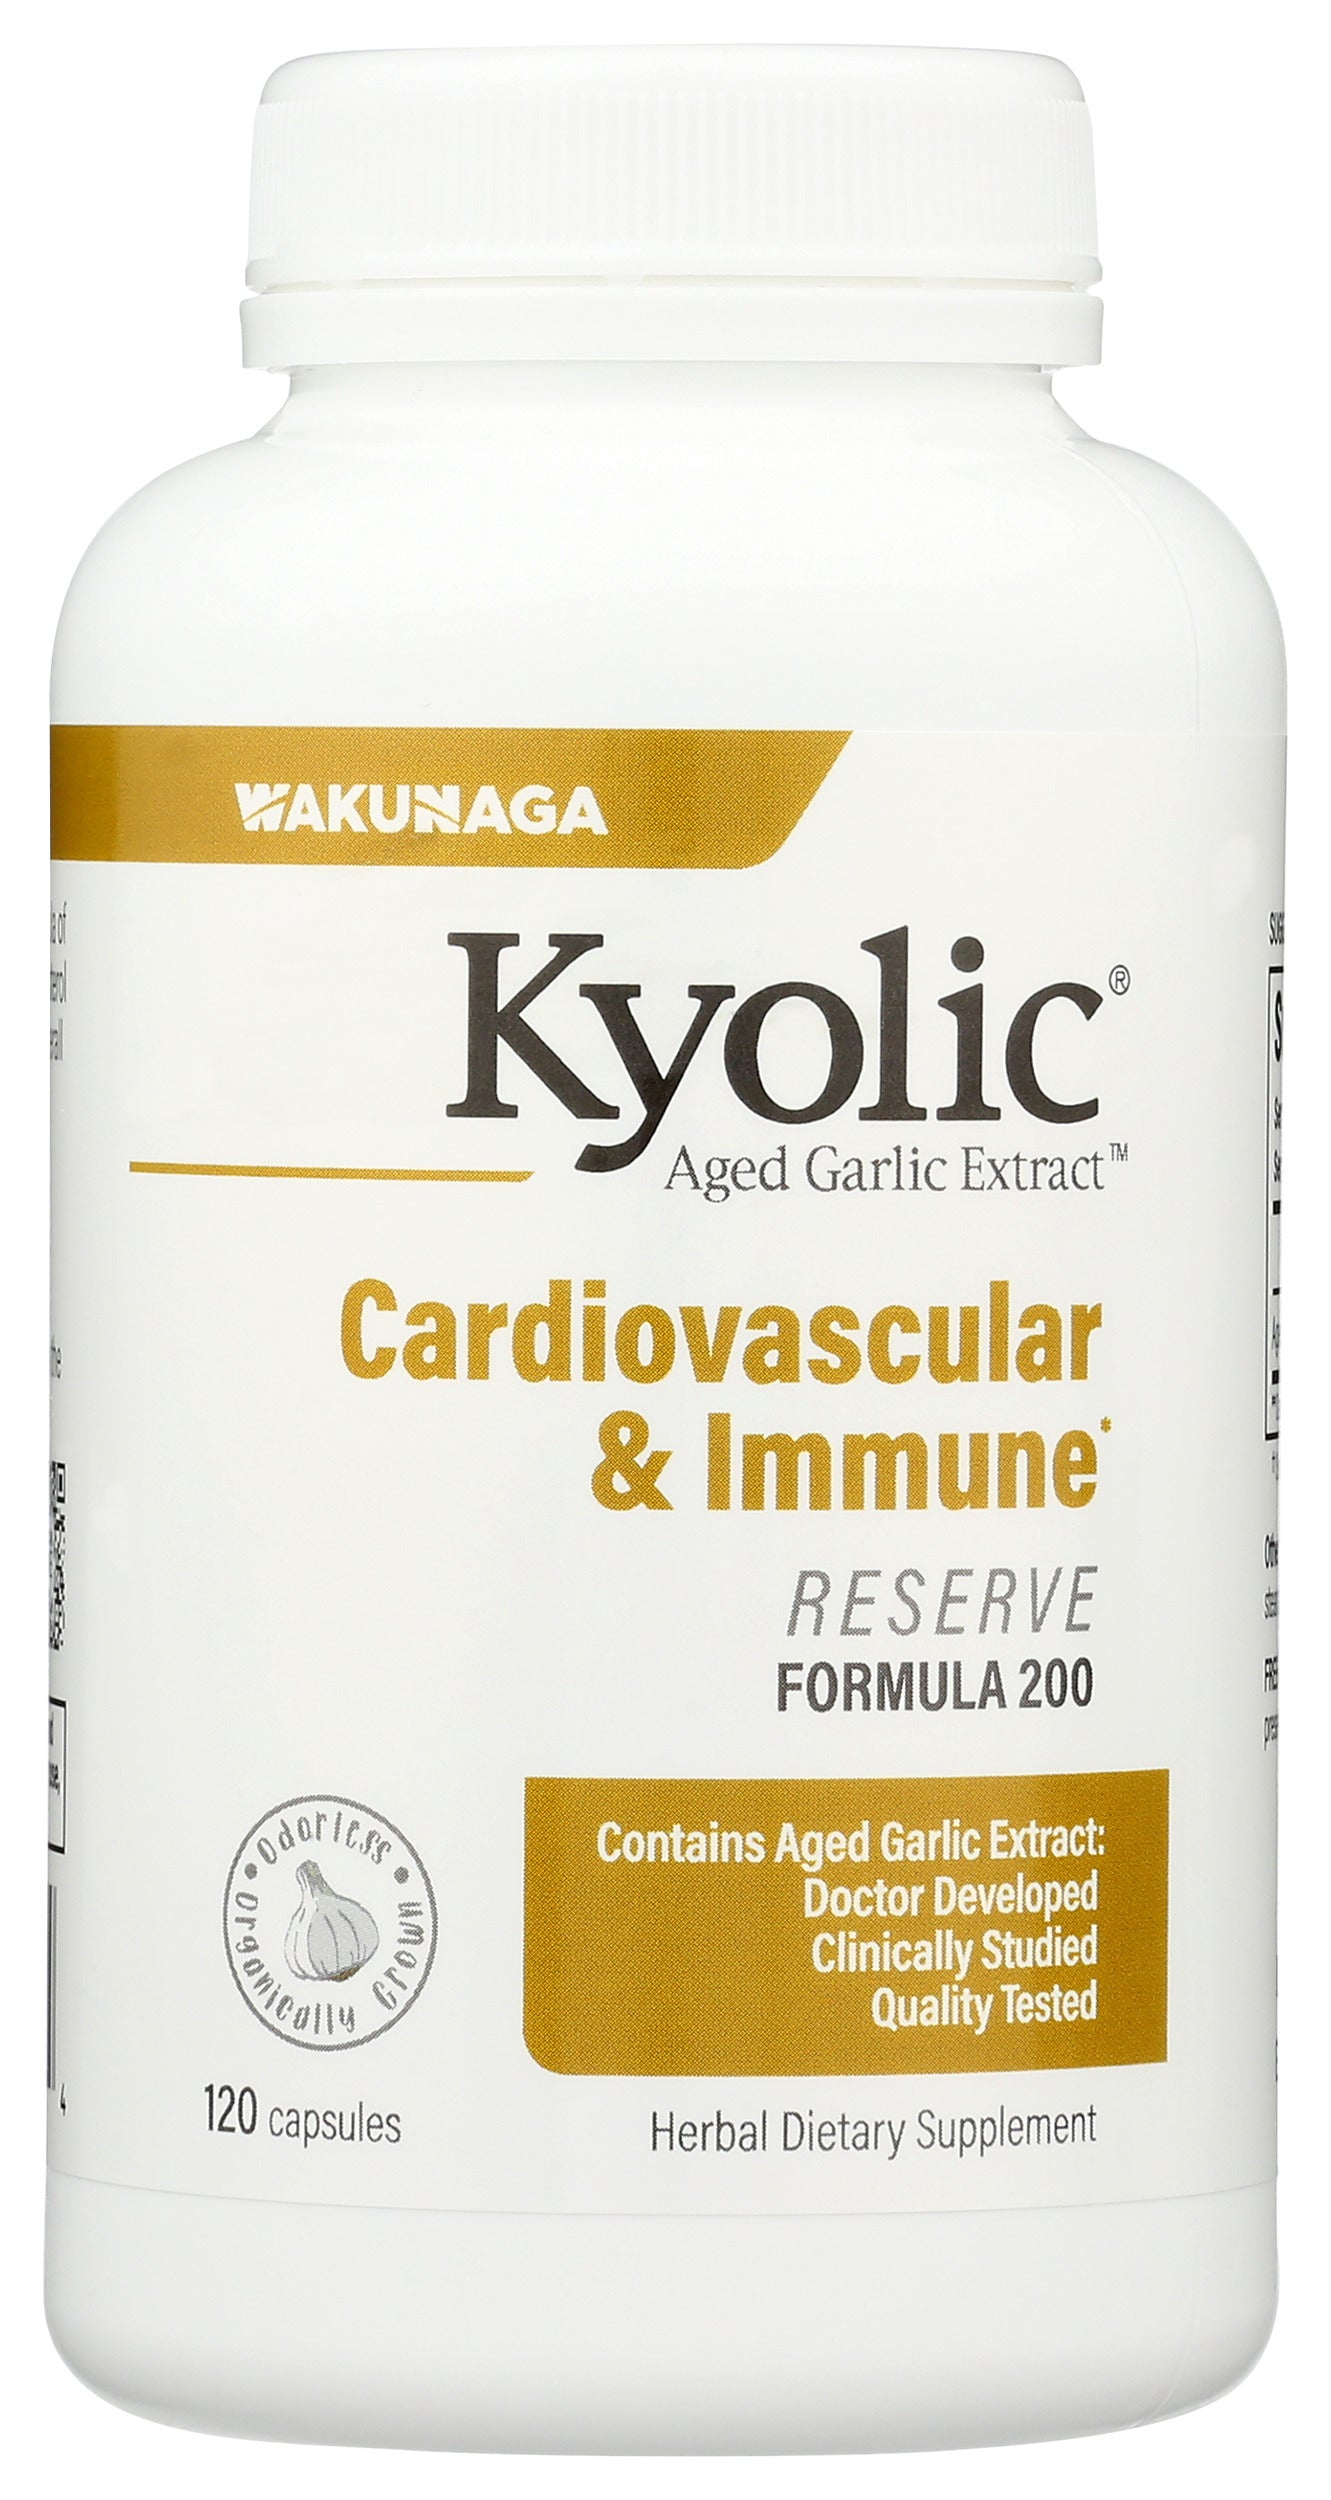 Wakunaga Kyolic Aged Garlic Extract Cardiovascular & Immune Formula 200 120 Capsules Front